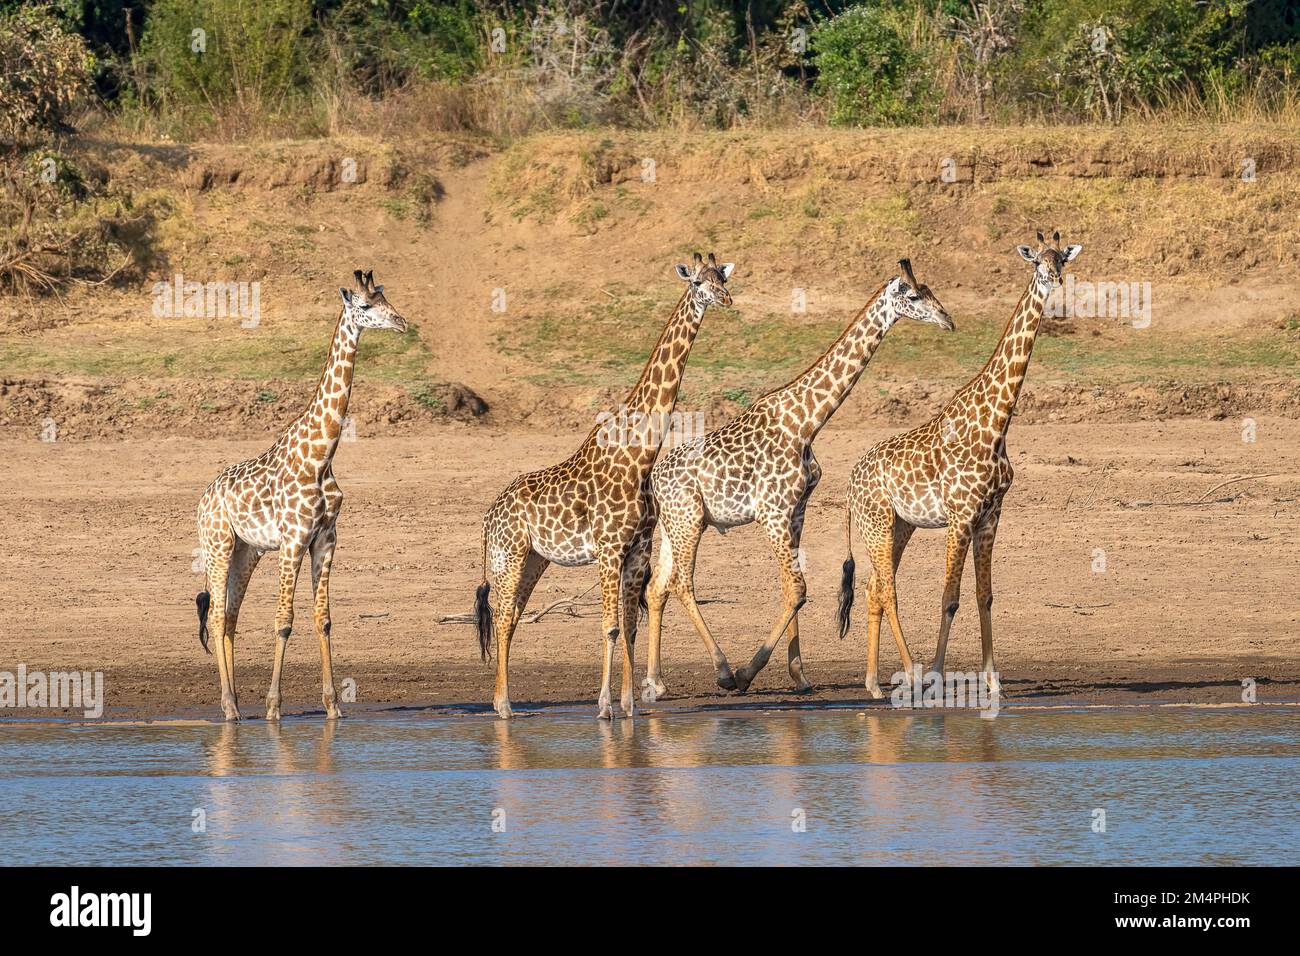 Girafe de Rhodésie (Giraffa camelopardalis thornicrofti), 4 animaux au bord de la rivière, au sud de Luangwa, en Zambie Banque D'Images